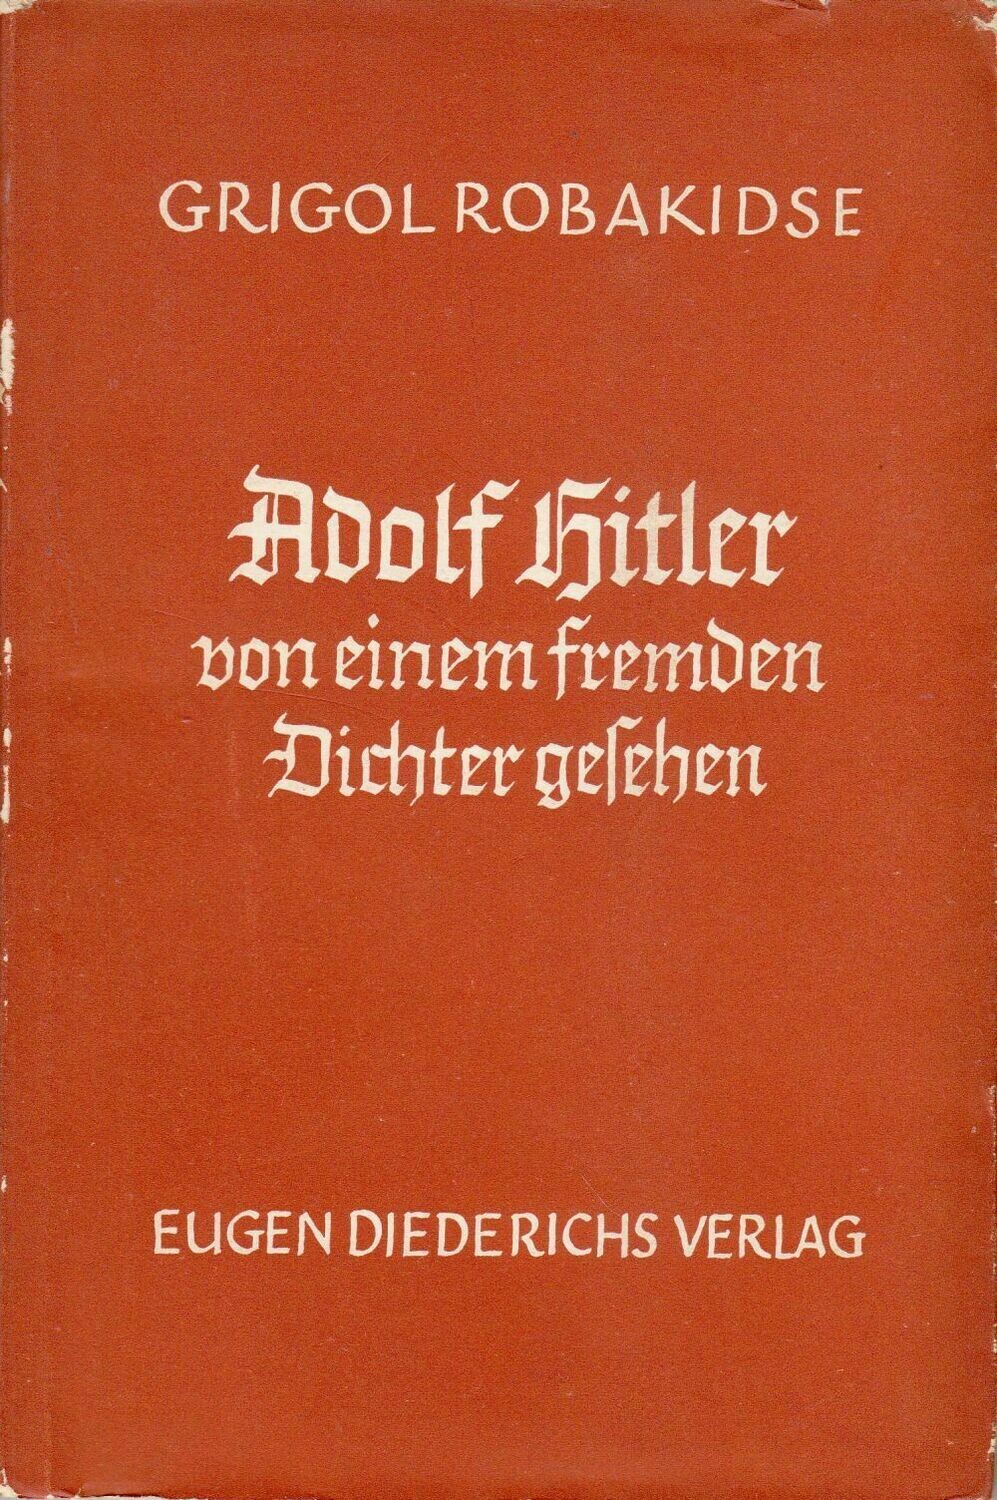 Adolf Hitler von einem fremden Dichter gesehen